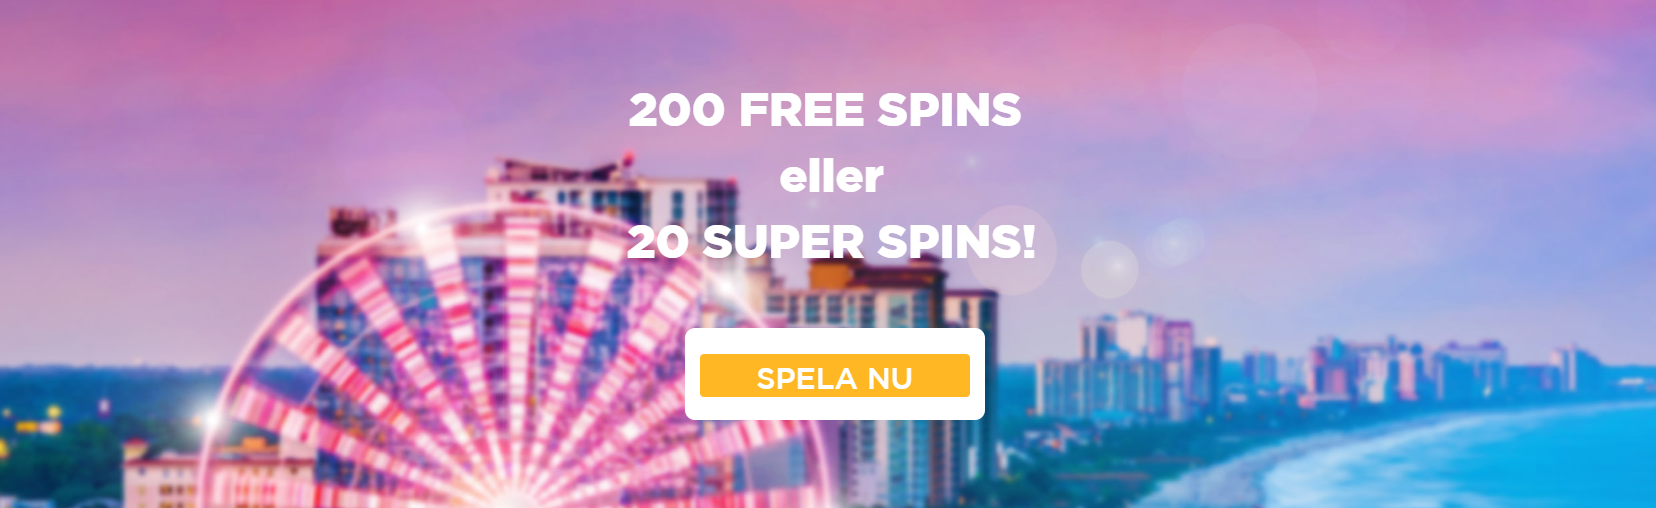 Super spins casino bonus code